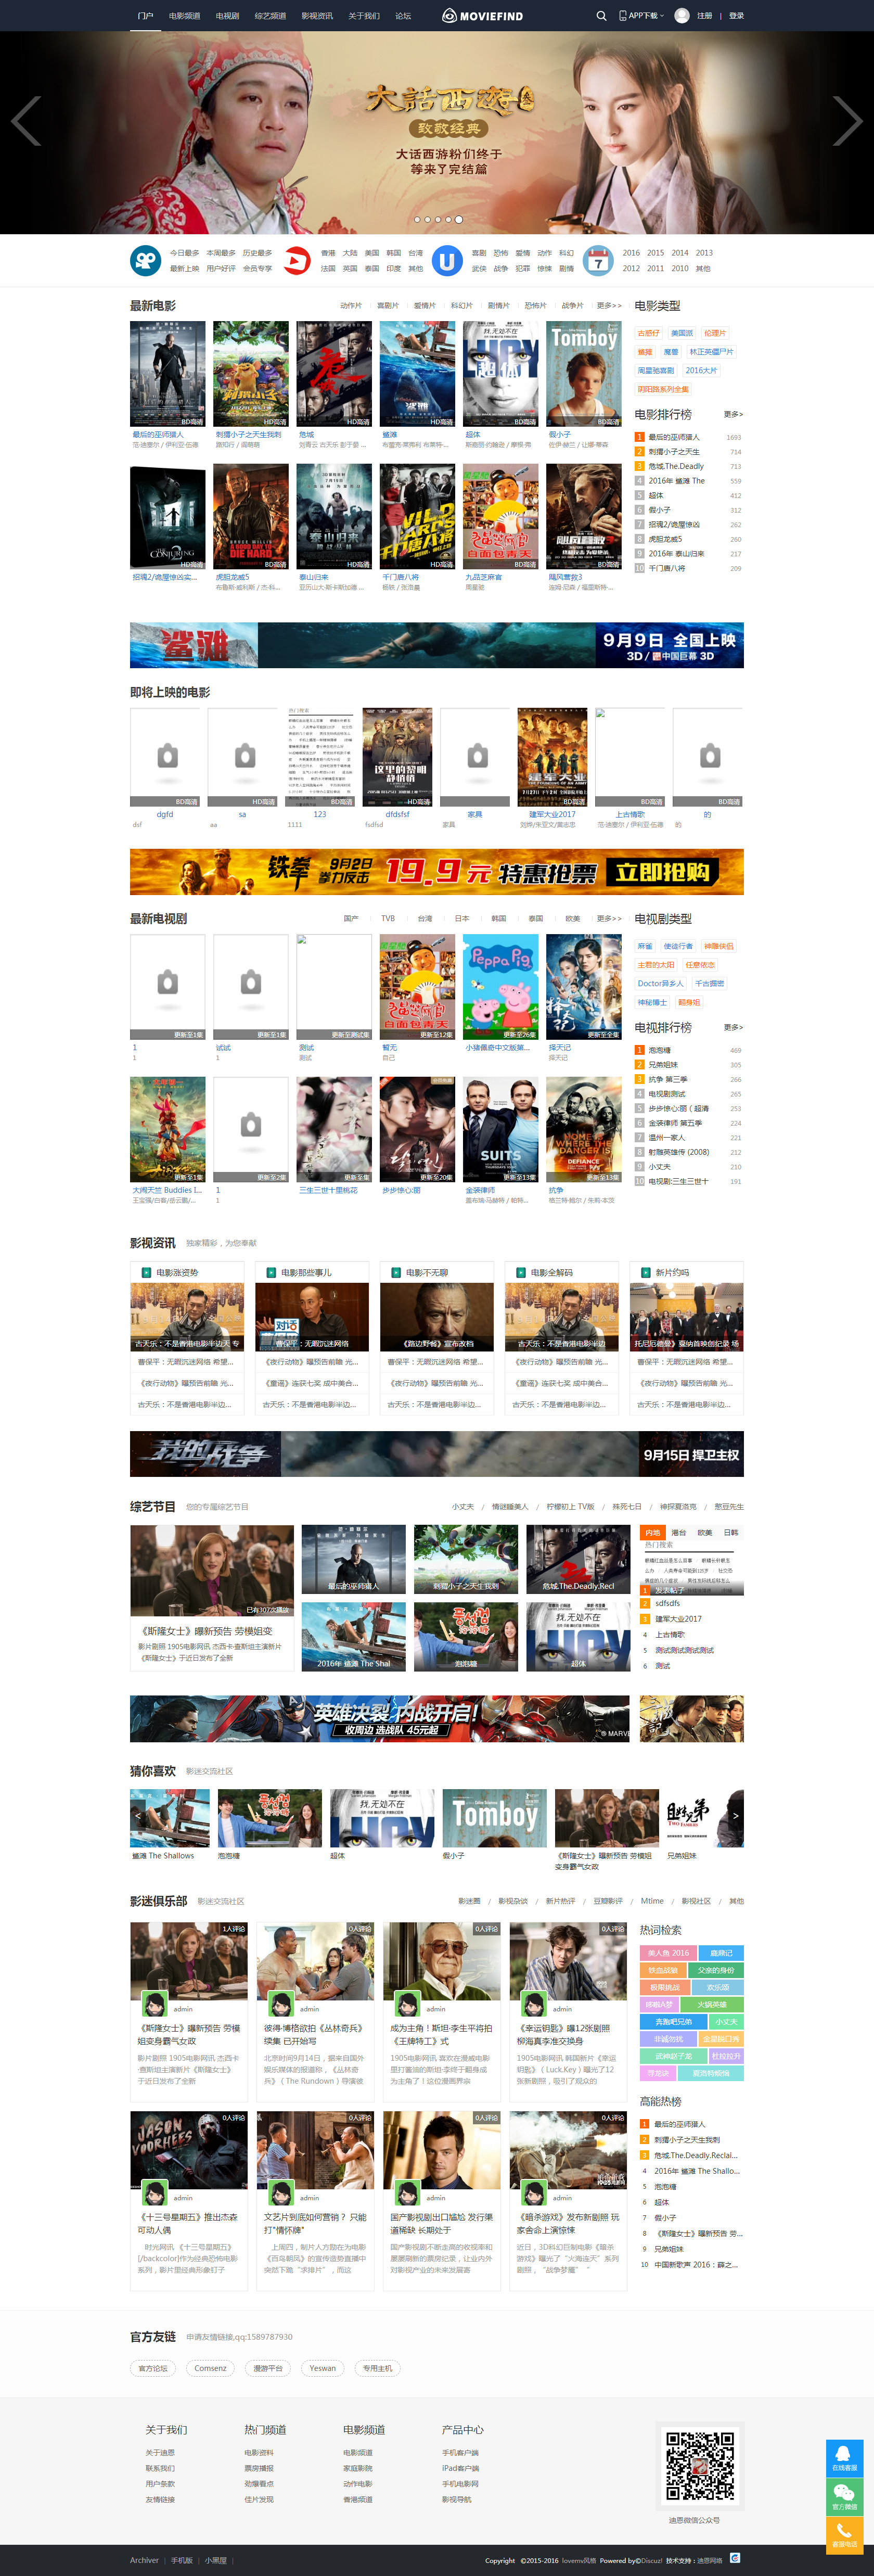 最新discuz x3.2模板 迪恩 电影电视剧视频网站源码 商业版 GBK